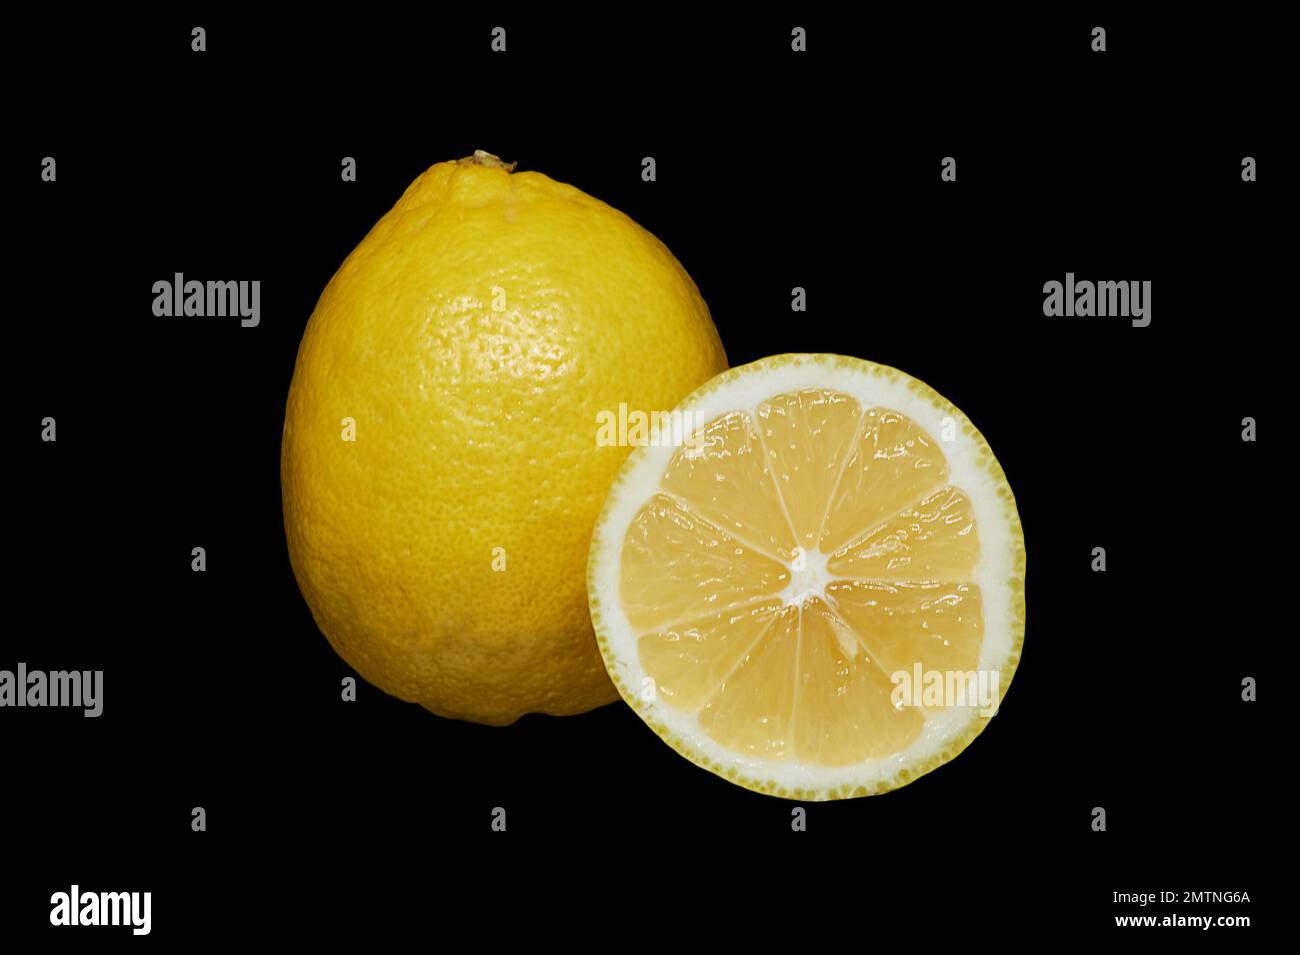 Immagine di un limone maturo e di una parte tagliata su sfondo nero Foto Stock